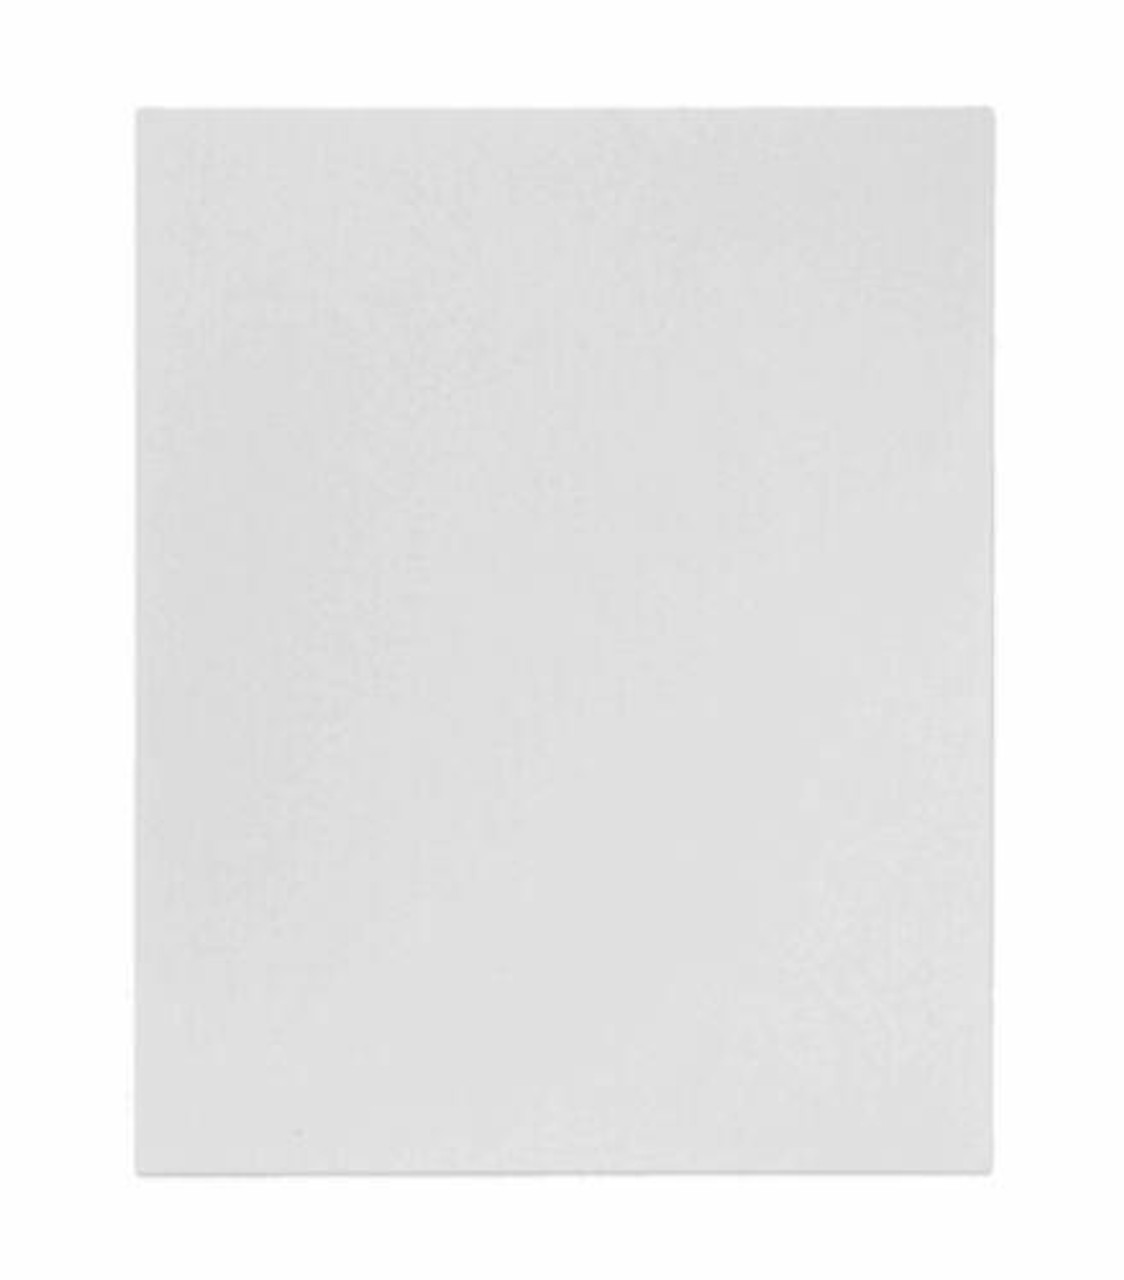 24x36 Standard White Backer Board